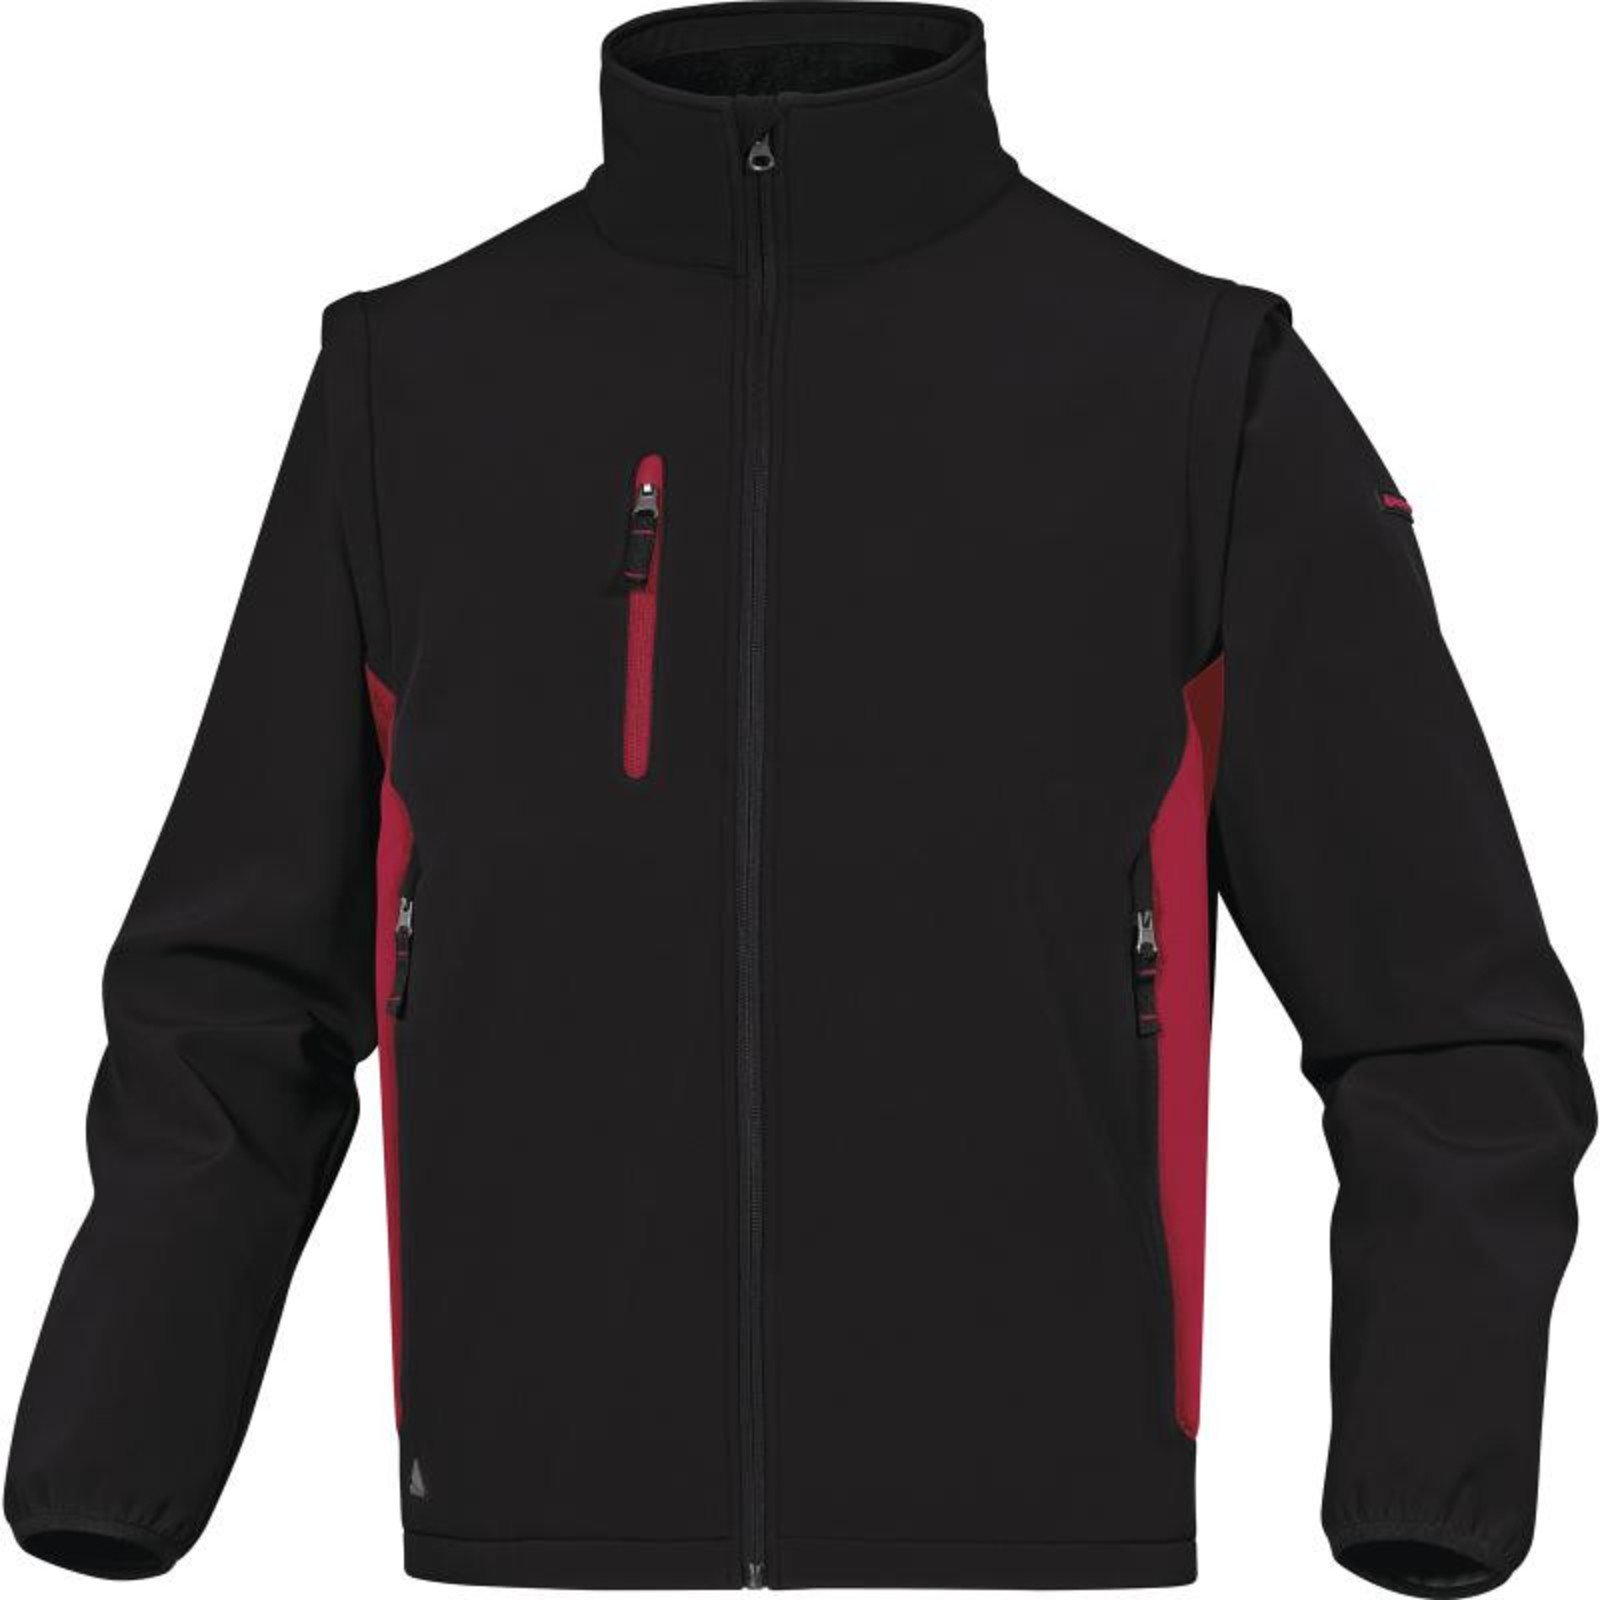 Softshellová bunda Delta Plus Mysen2 2v1 - veľkosť: S, farba: čierna/červená